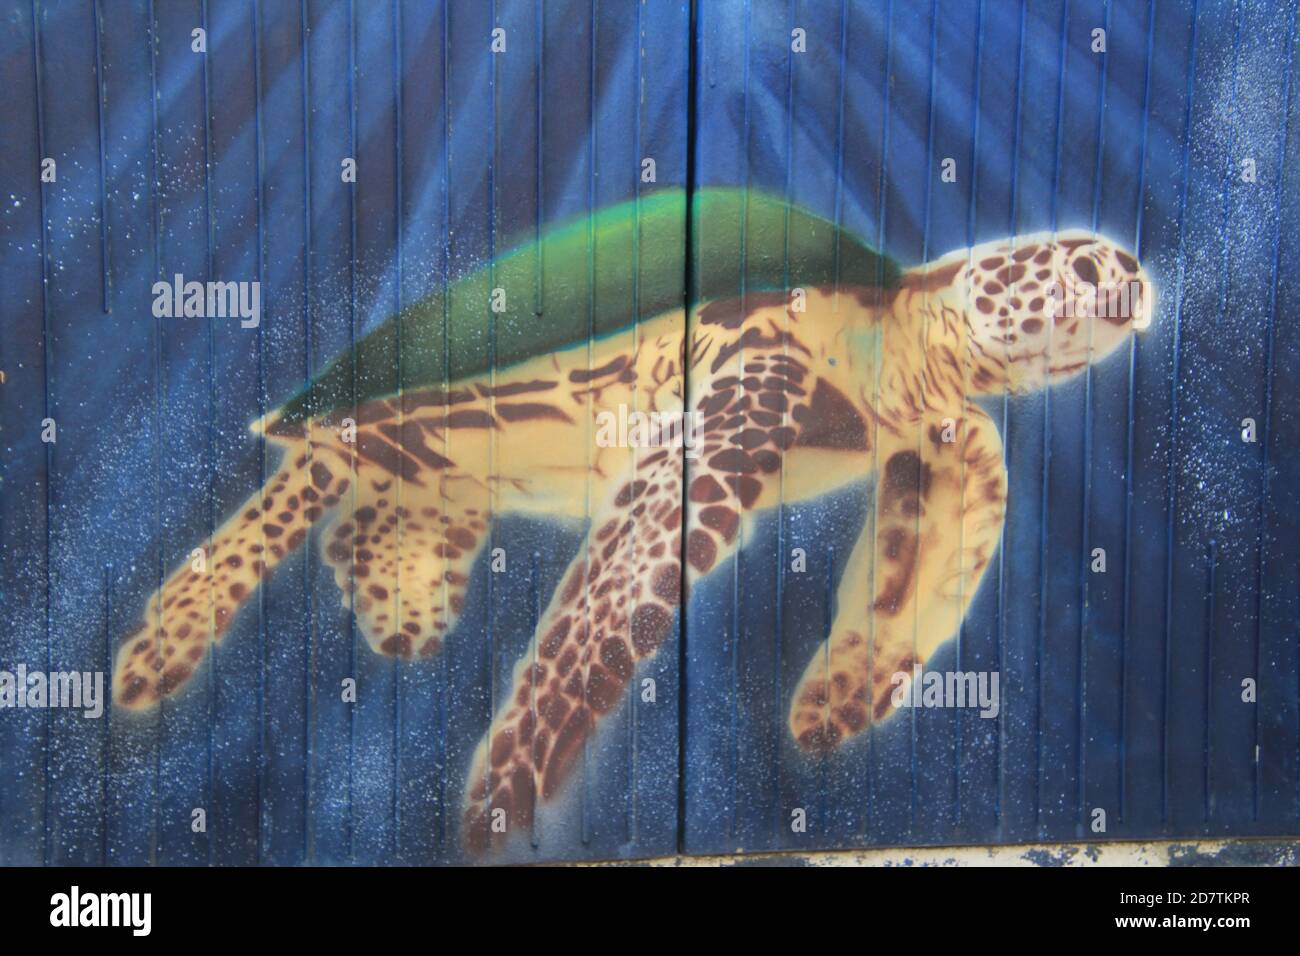 Stretart, Graffiti auf einem Stromkasten am Straßenrand, Der Künstler hat den Kasten mit einer Meeres-Schildkröte verziert. Foto Stock